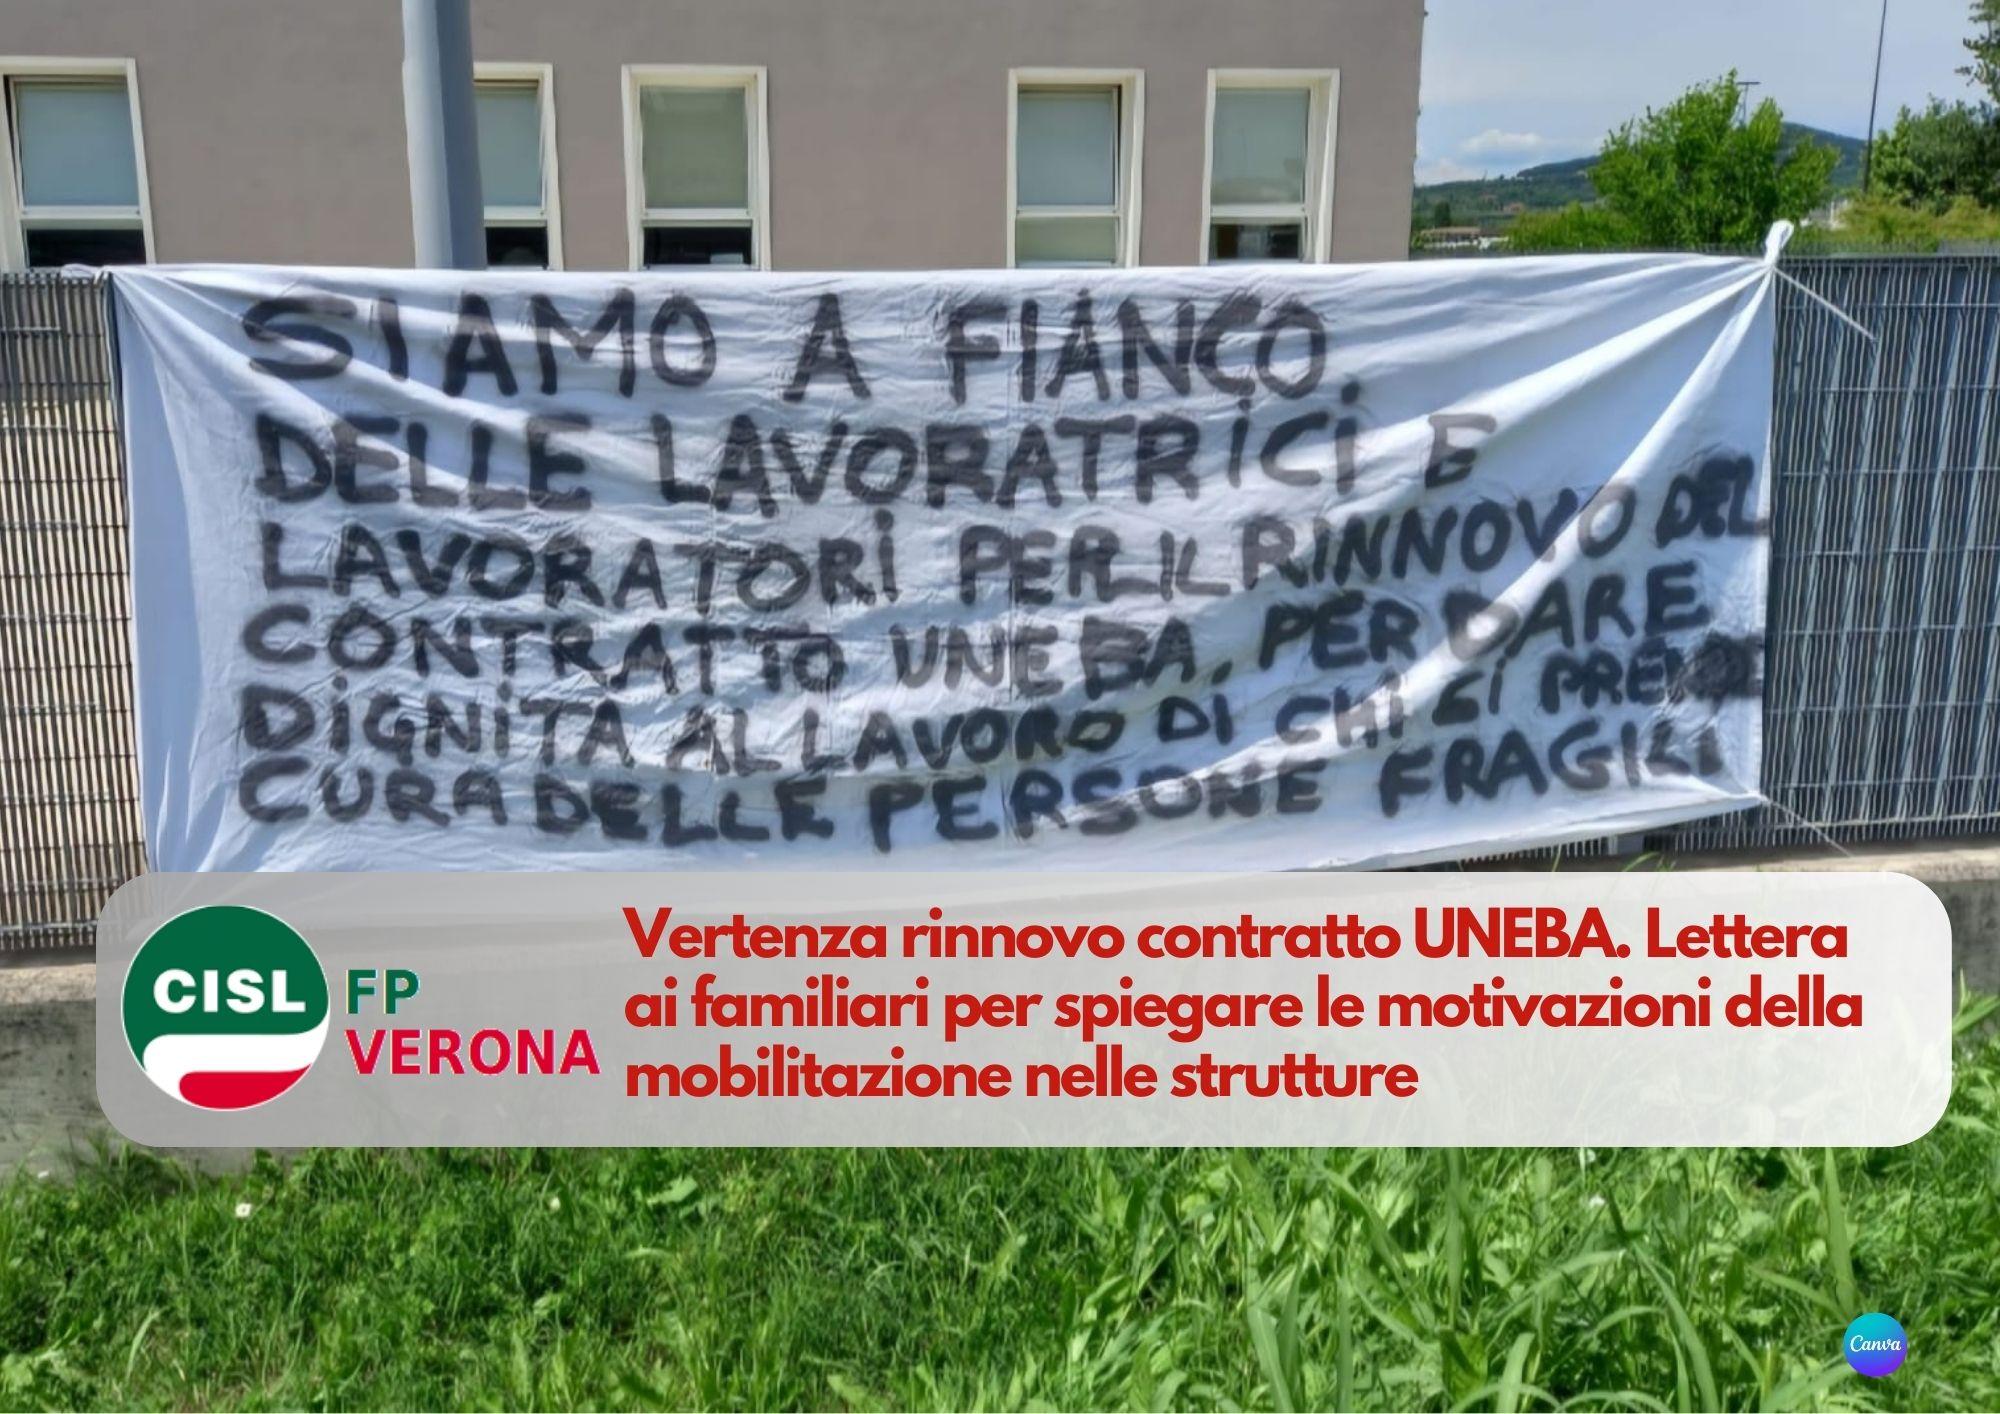 CISL FP Verona. Lettera ai familiari per spiegare le motivazioni della mobilitazione strutture UNEBA